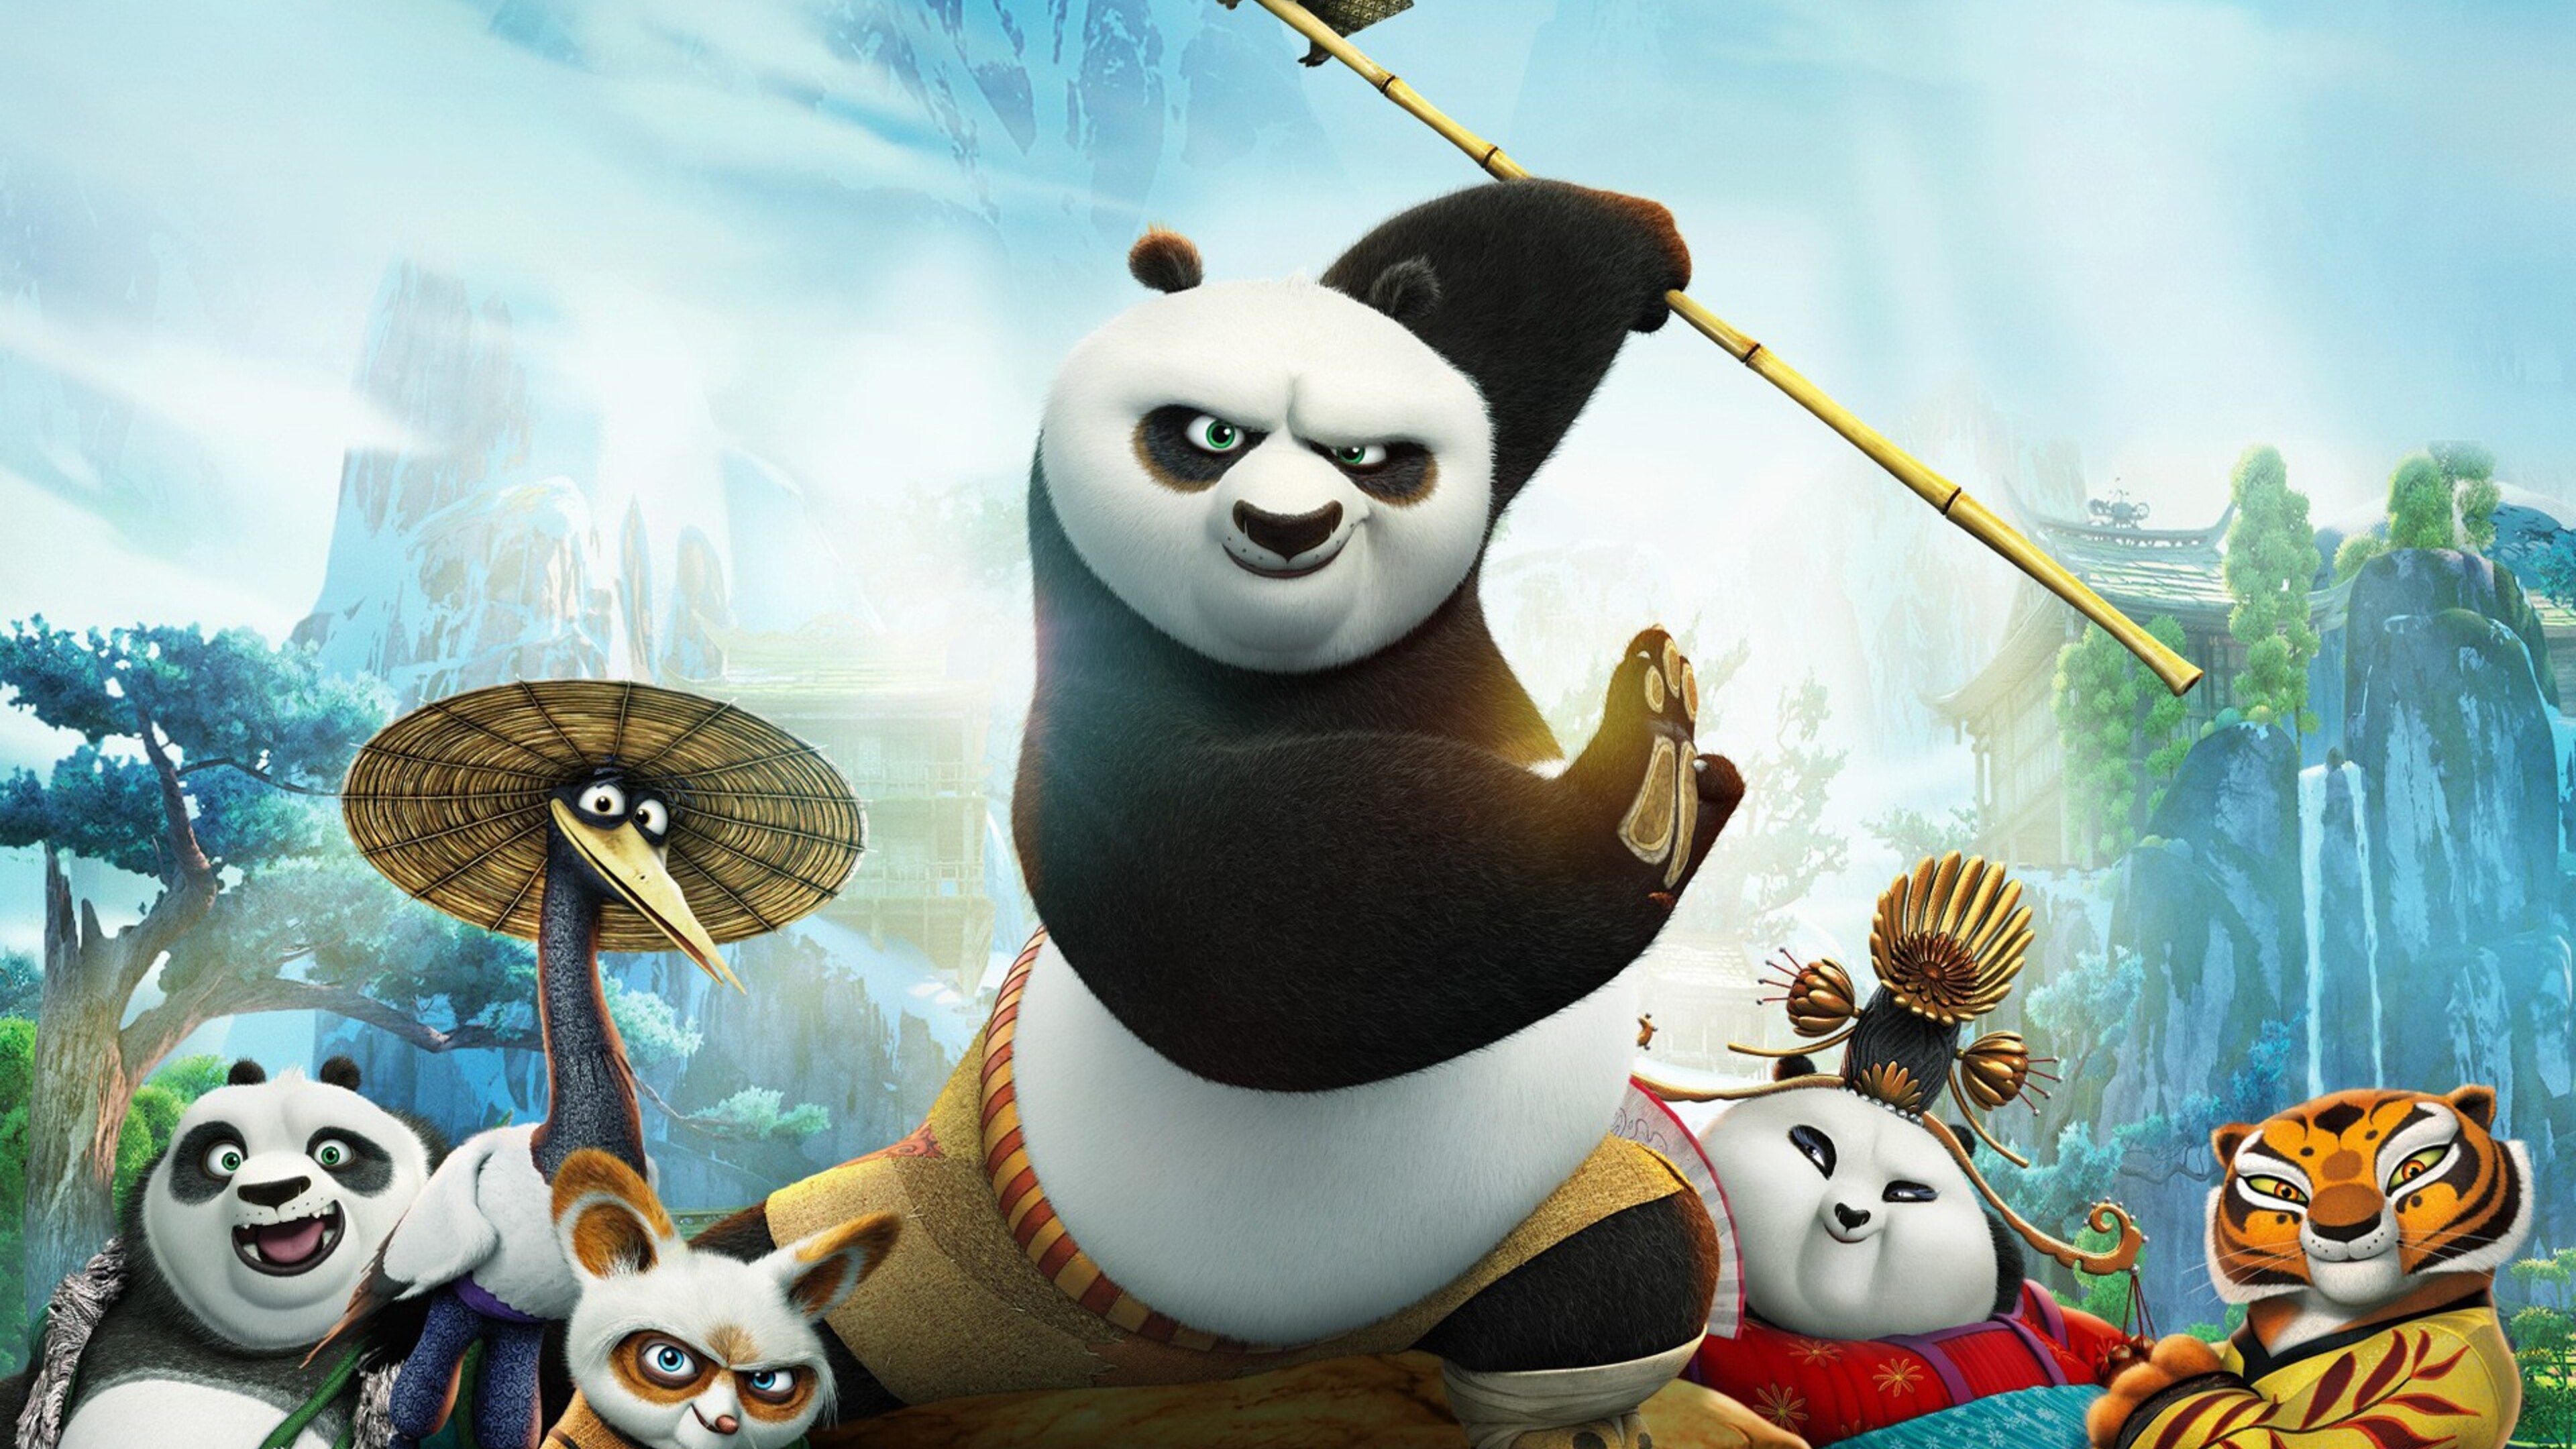 Kung fu panda 3 hindi dubbed full movie download